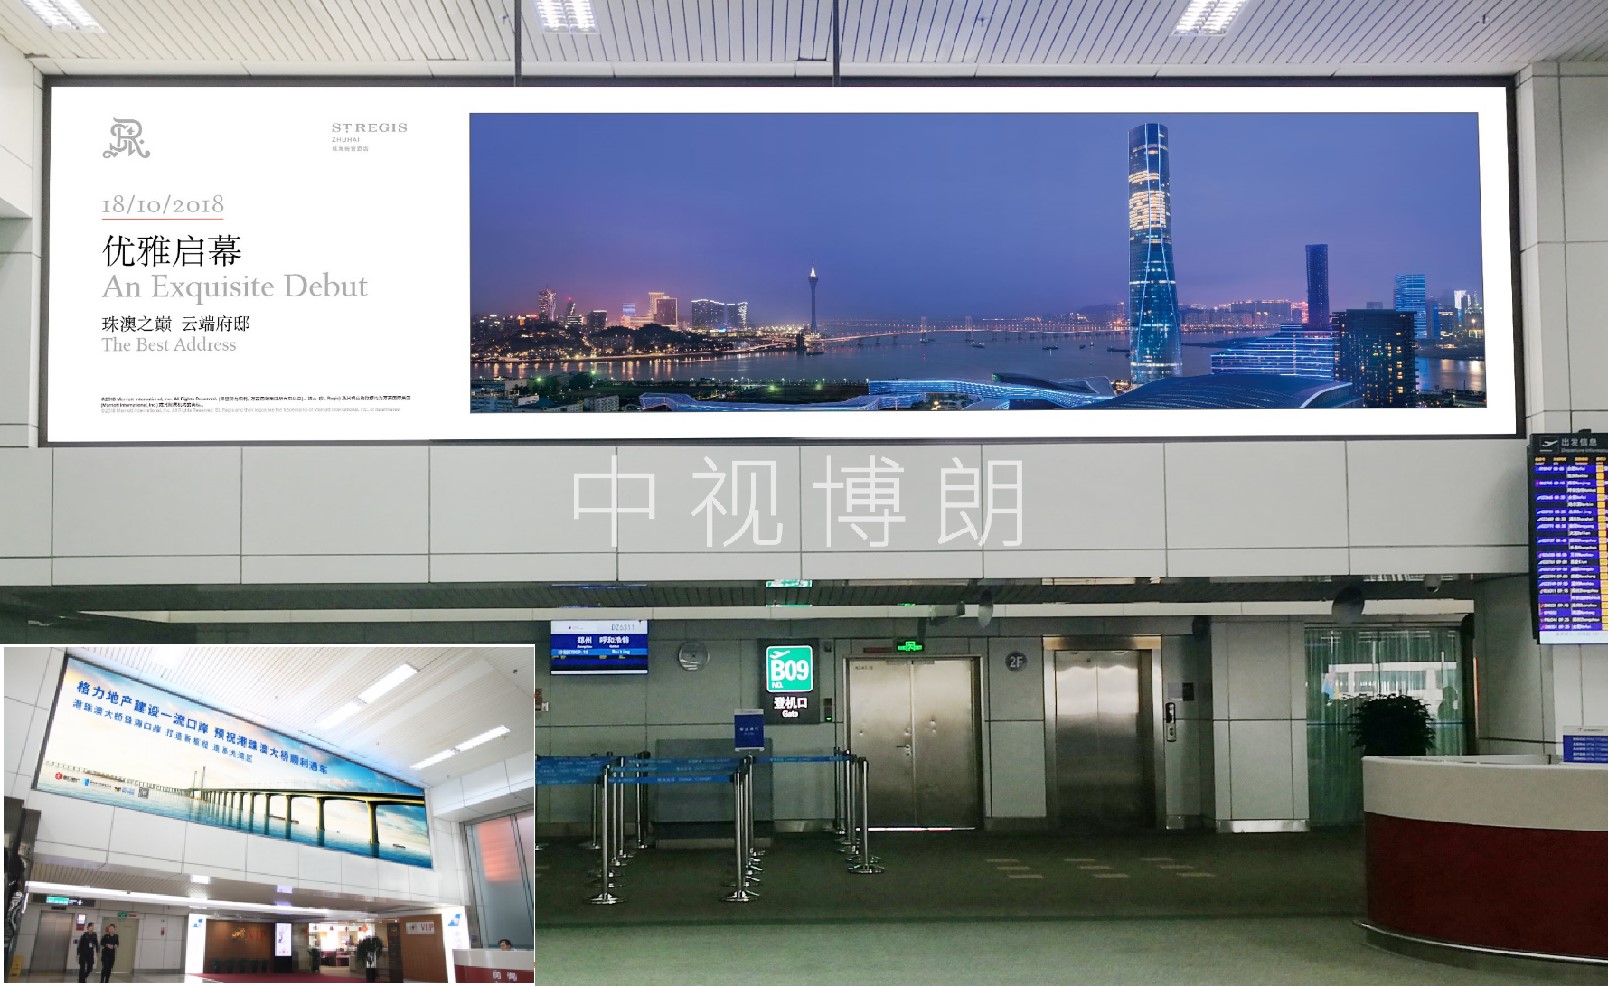 珠海机场广告-候机区上方门楣灯箱套装